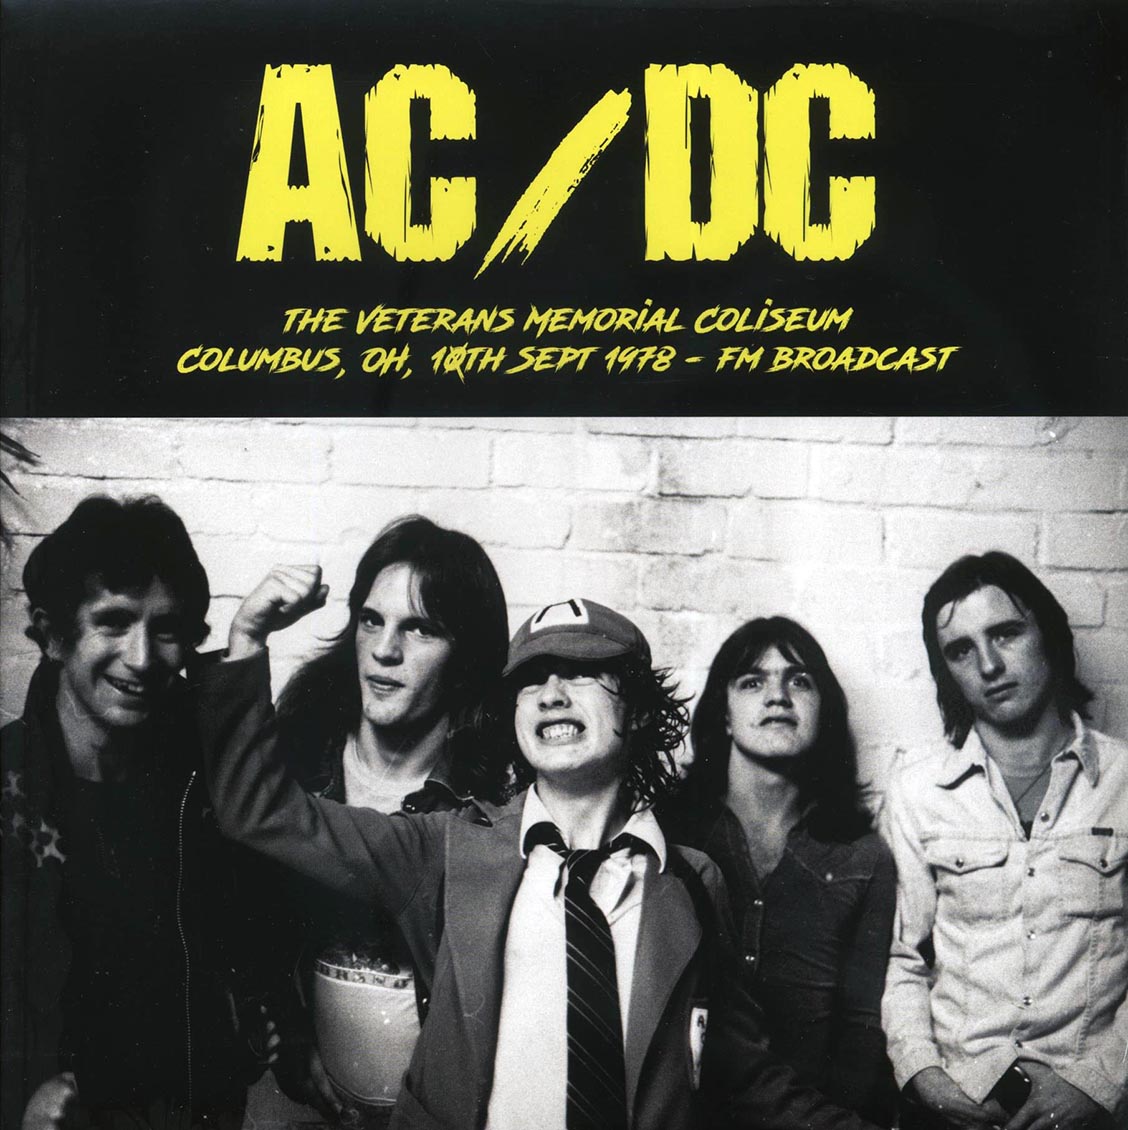 AC/DC - The Veterans Memorial Coliseum, Columbus, OH, 10th Sept 1978 FM Broadcast (ltd. 500 copies made) - Vinyl LP